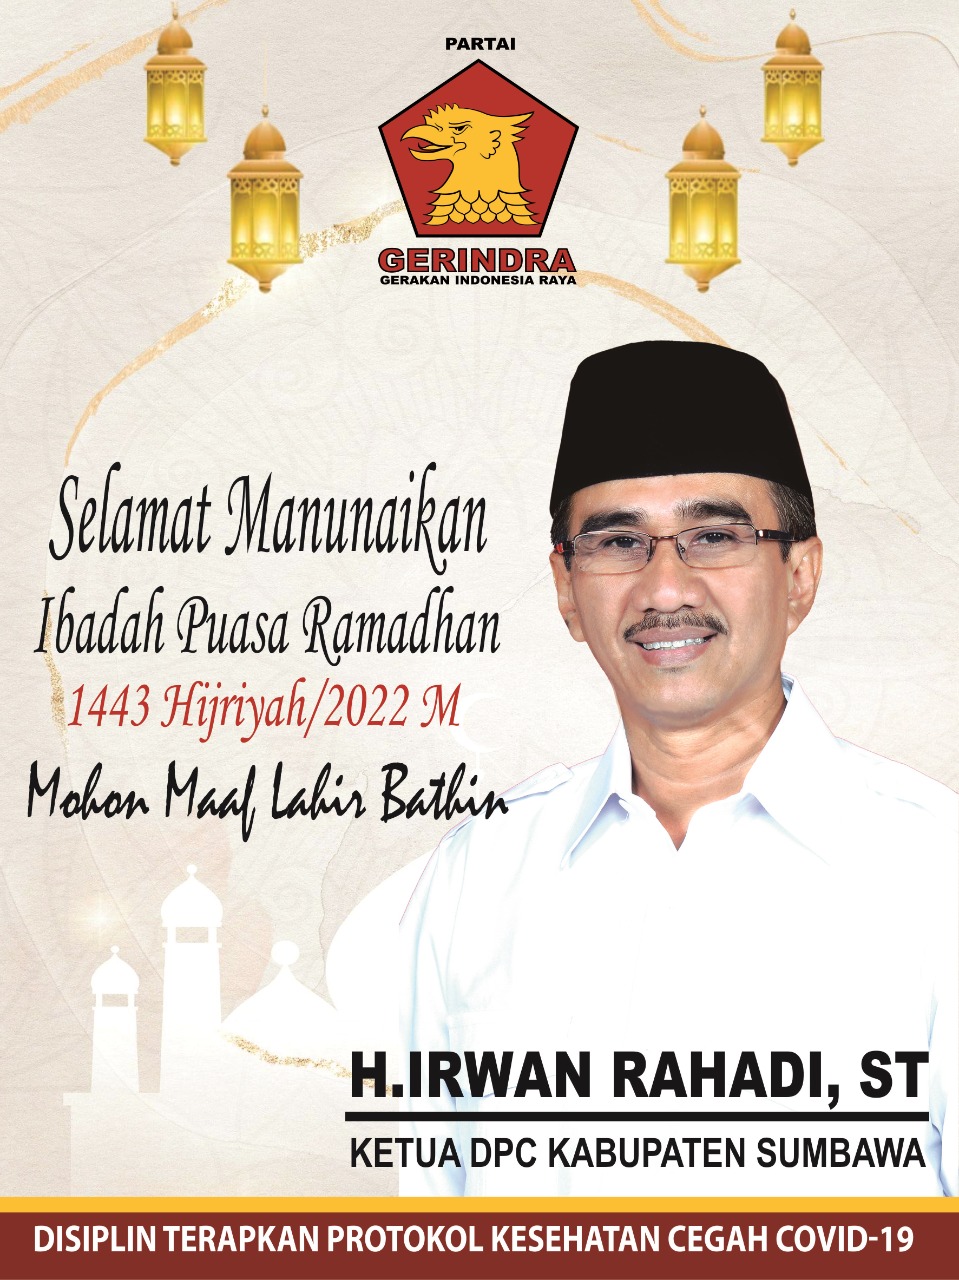 Keluarga Besar DPC Gerindra Sumbawa mengucapkan Marhaban ya Ramadhan